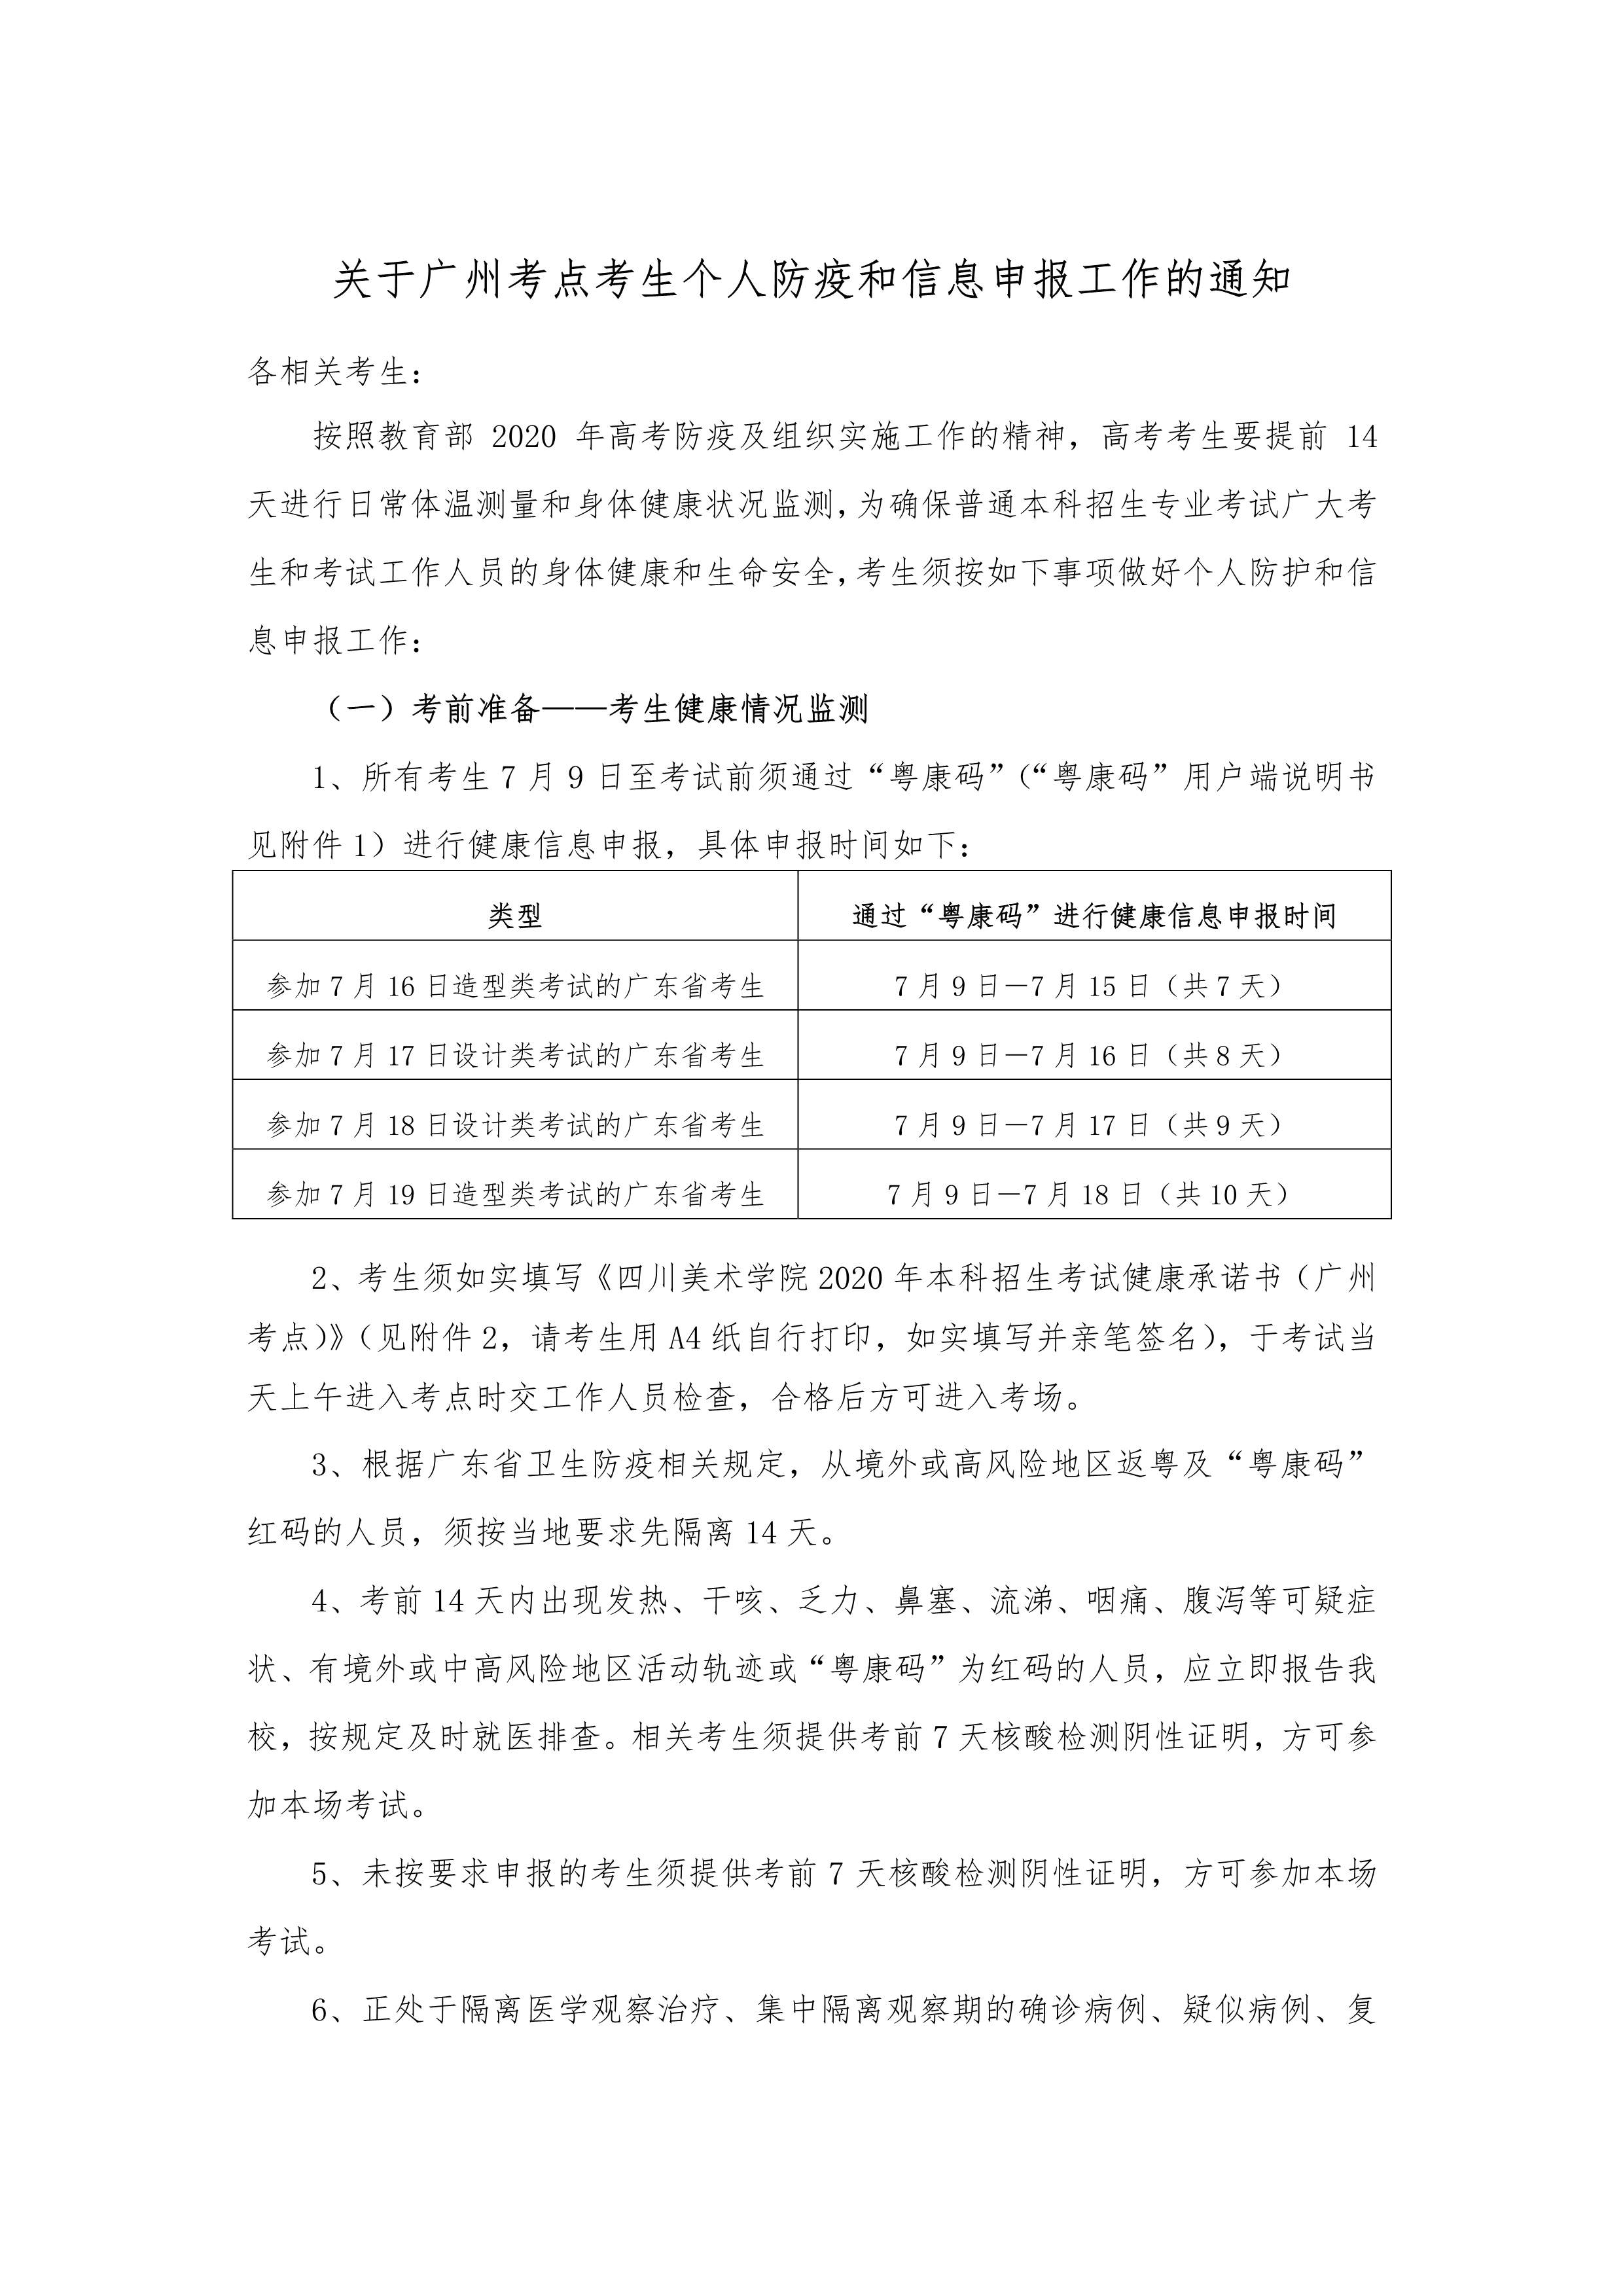 附件8：广州考点考生防疫须知_1.jpg